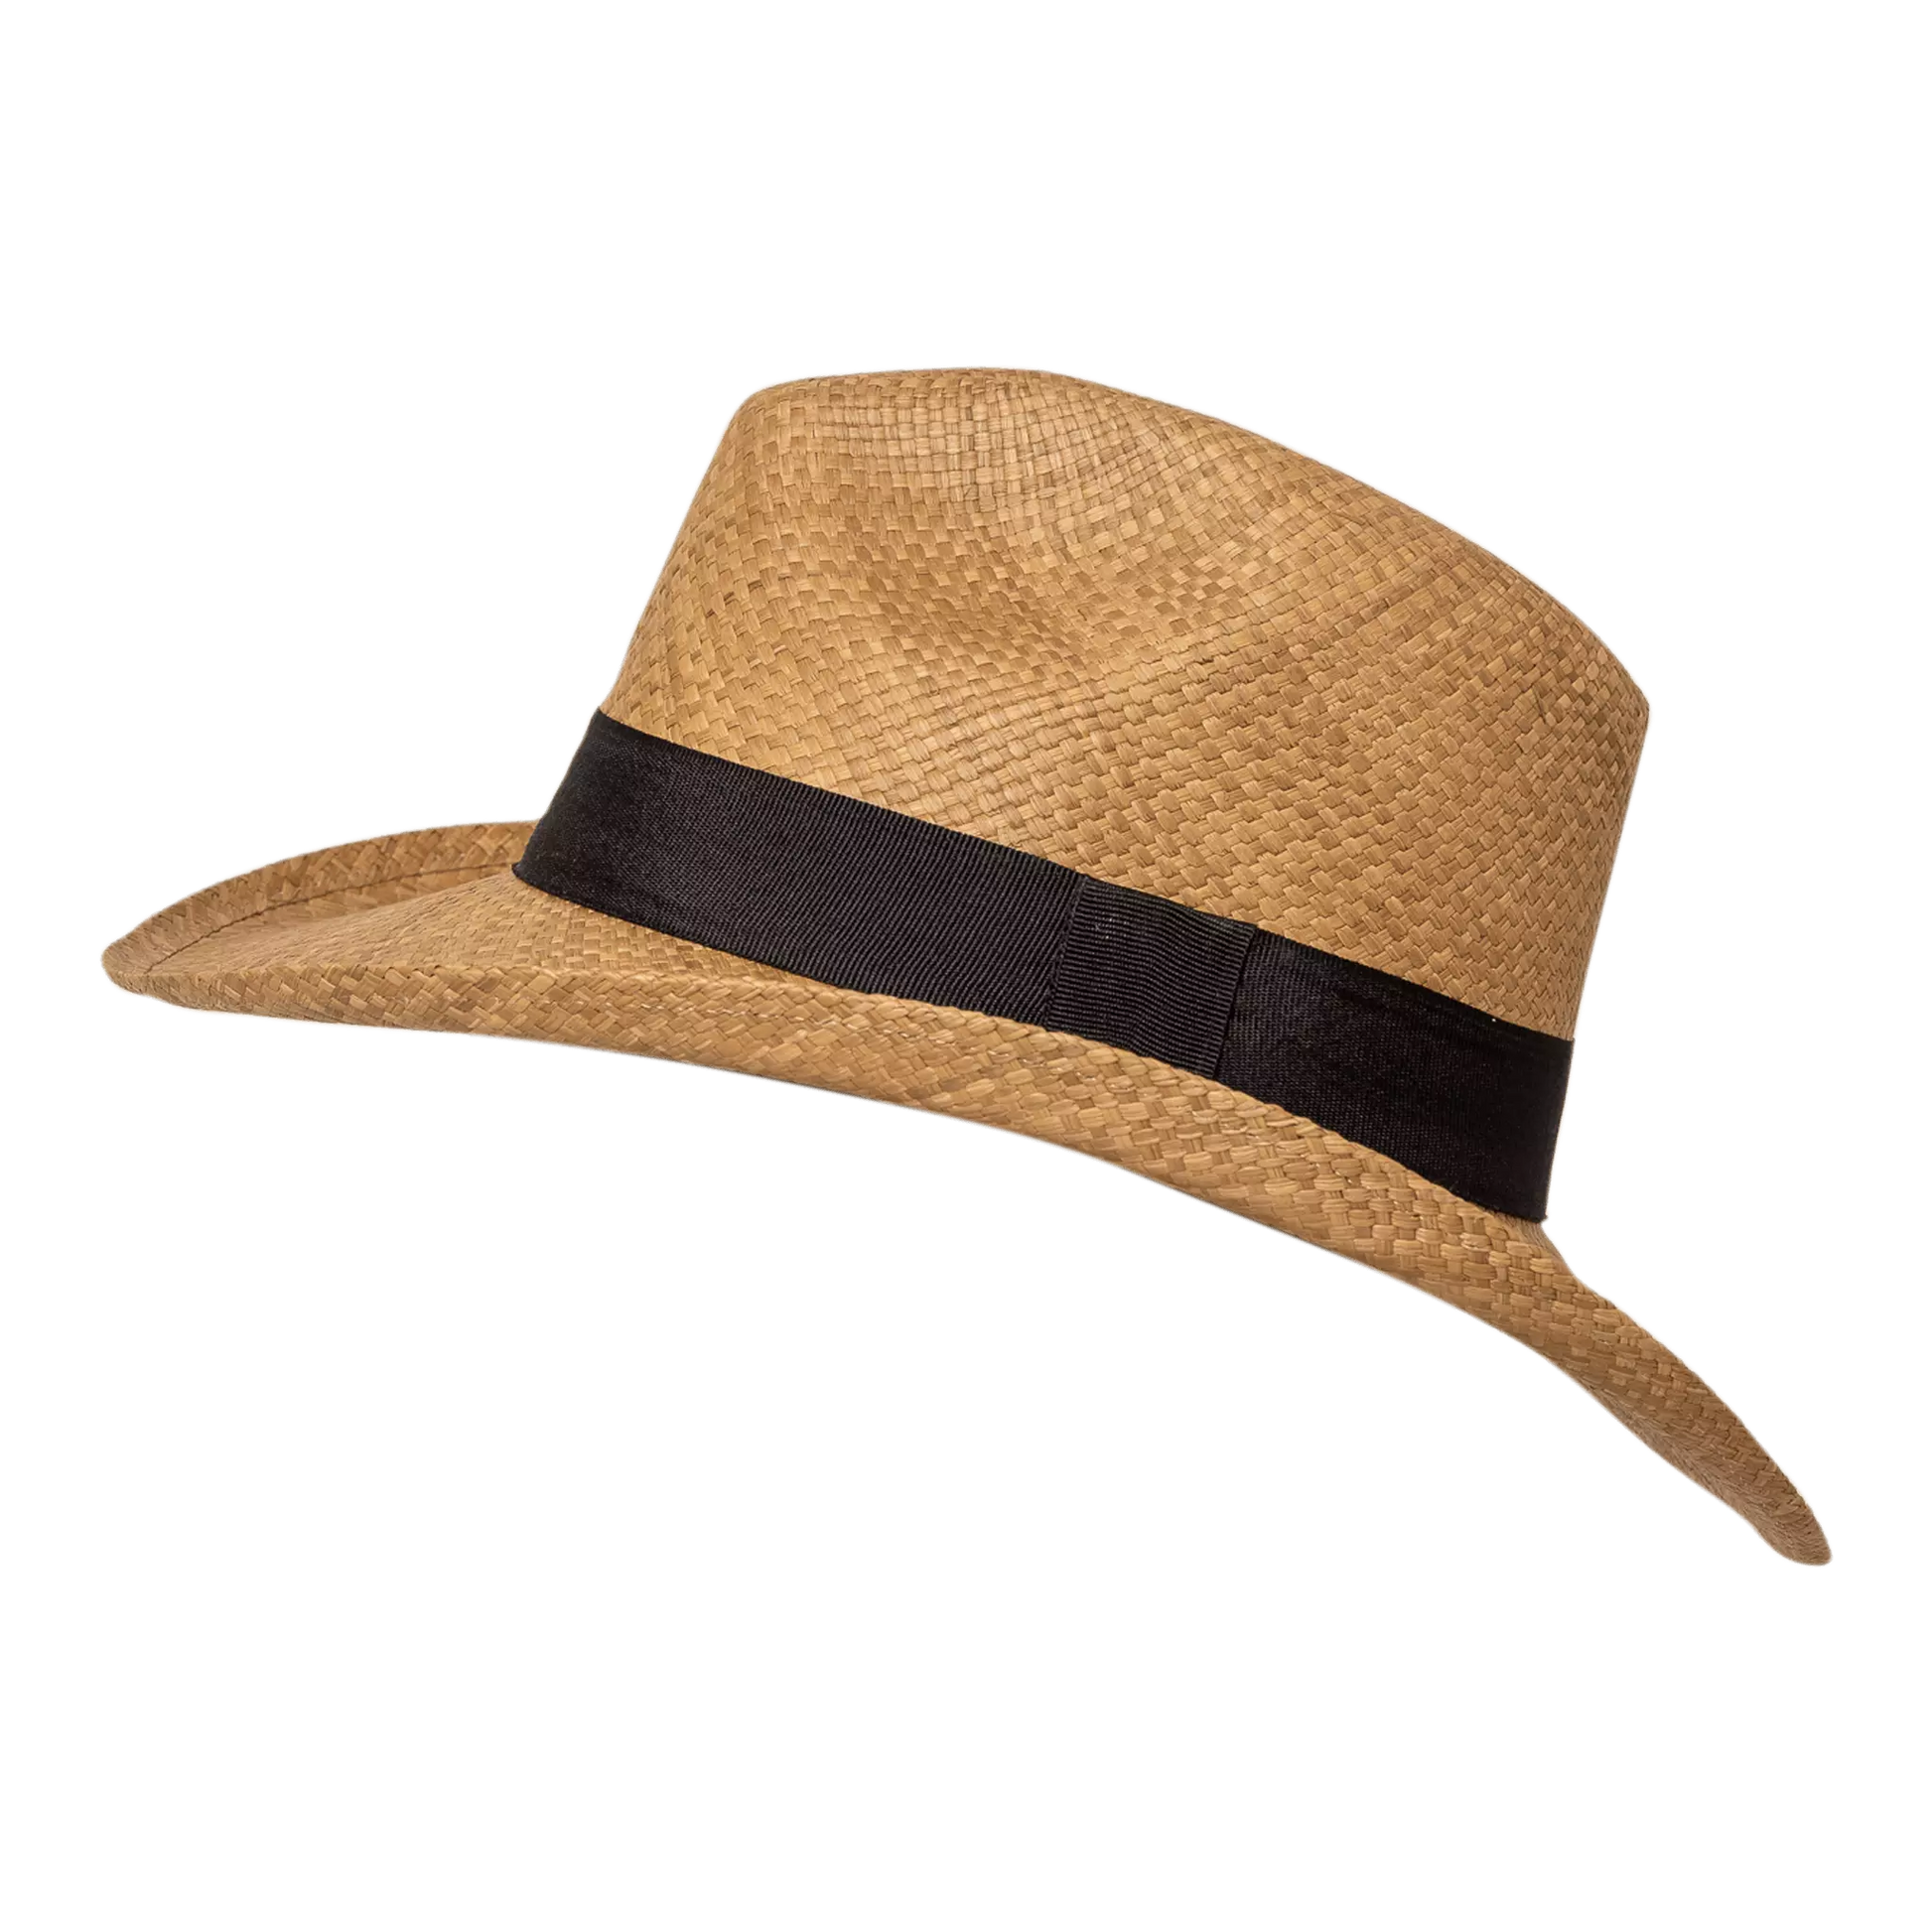    Sombrero-apareado-borsalino-cafe-vista-lateral